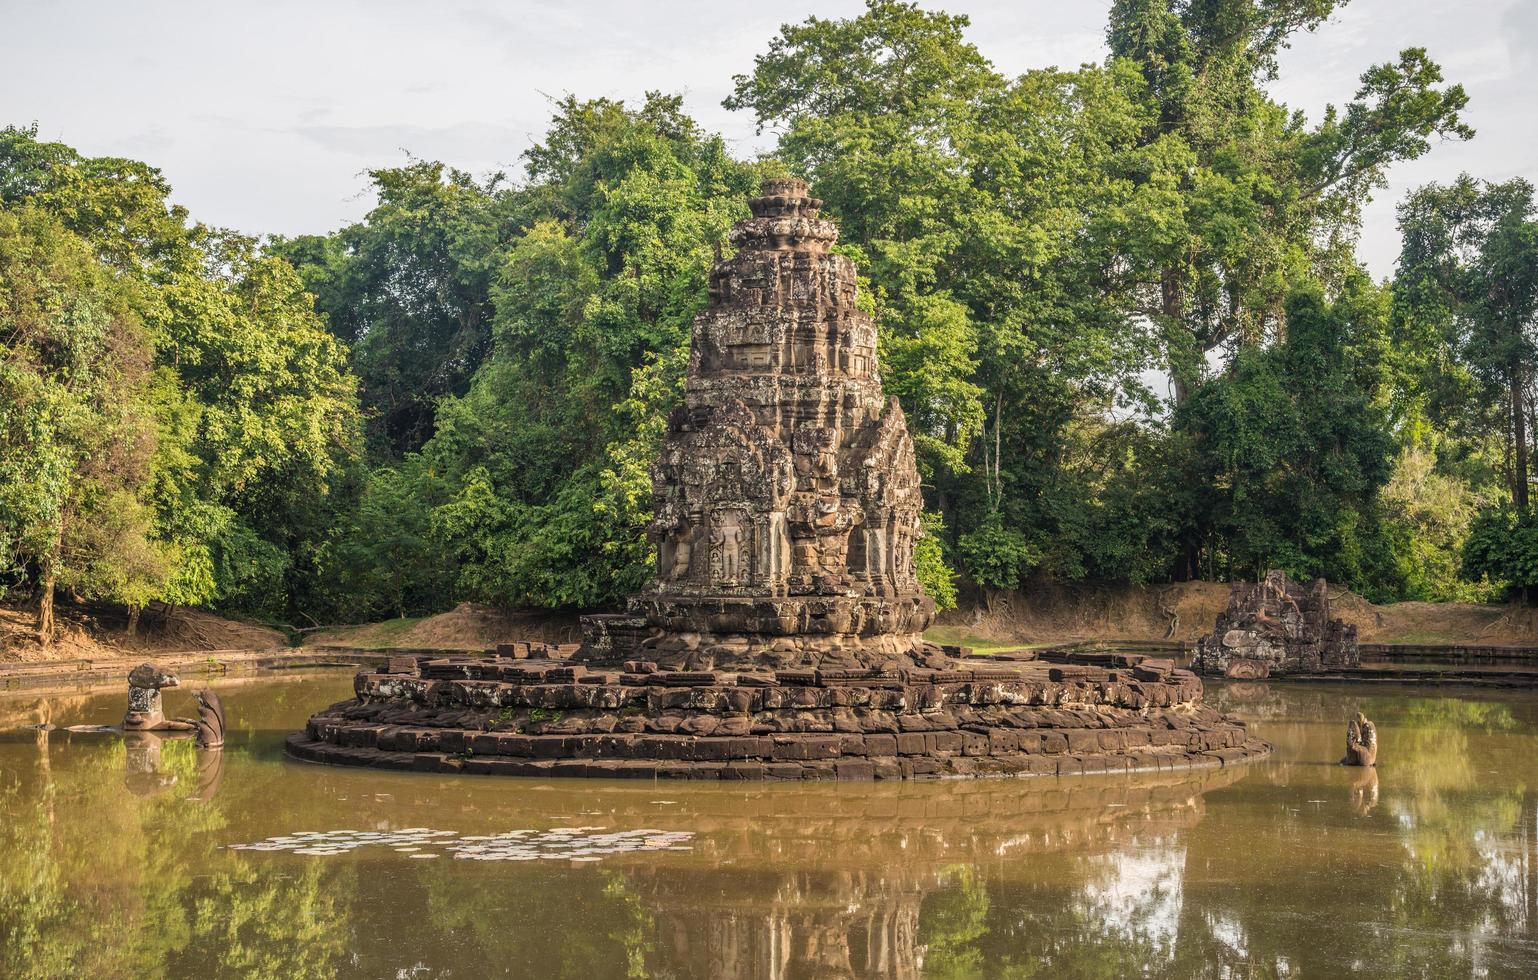 neak pean temple é uma ilha artificial com um templo budista em uma ilha circular em preah khan baray construída durante o reinado do rei jayavarman vii. foto